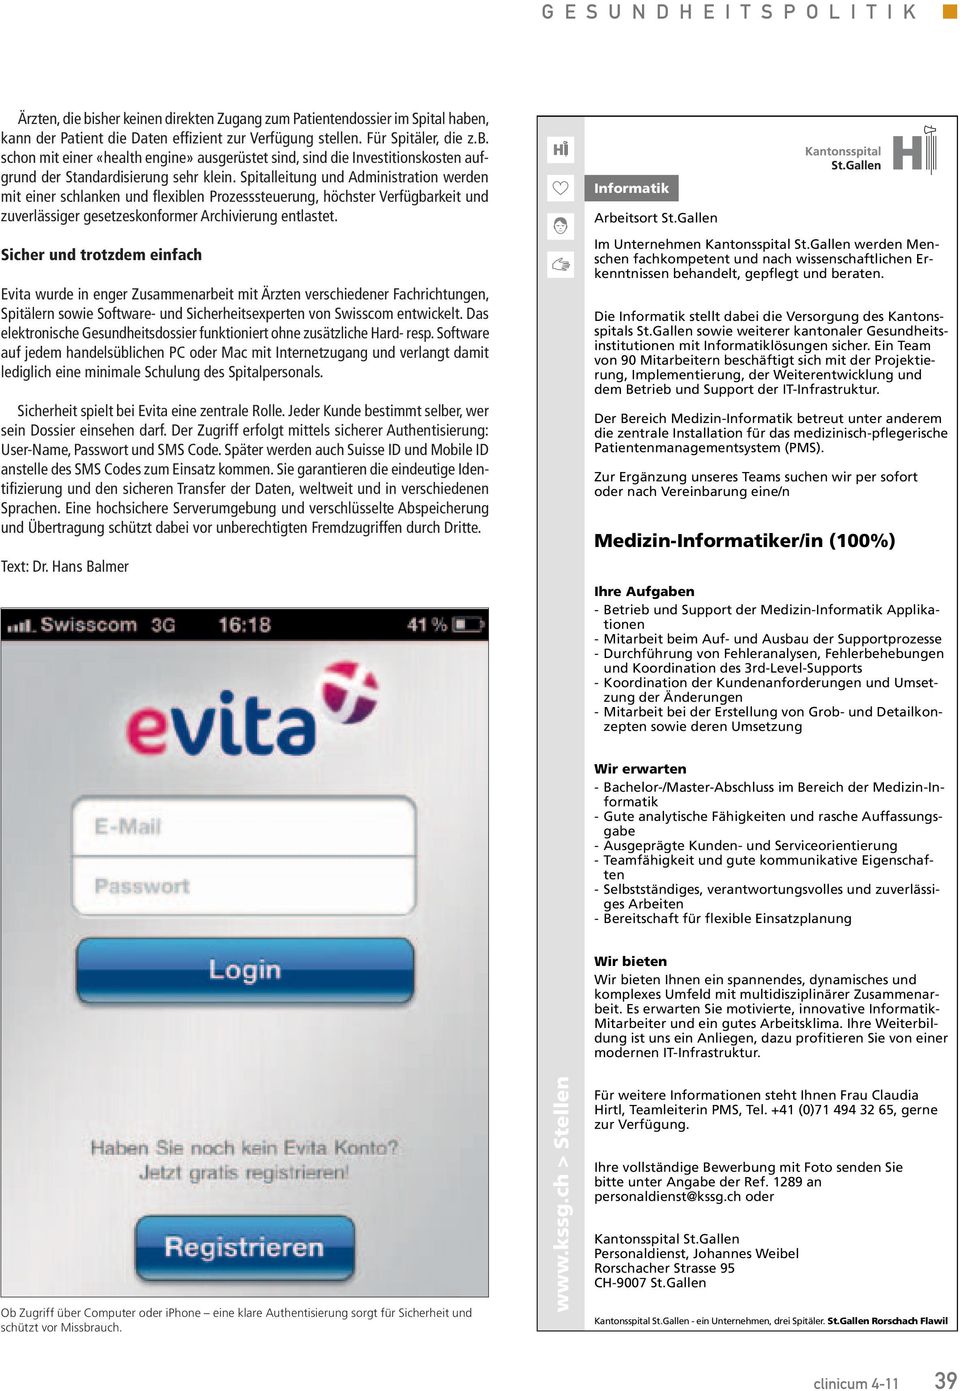 Sicher ud trotzdem eifach Evita wurde i eger Zusammearbeit mit Ärzte verschiedeer Fachrichtuge, Spitäler sowie Software- ud Sicherheitsexperte vo Swisscom etwickelt.